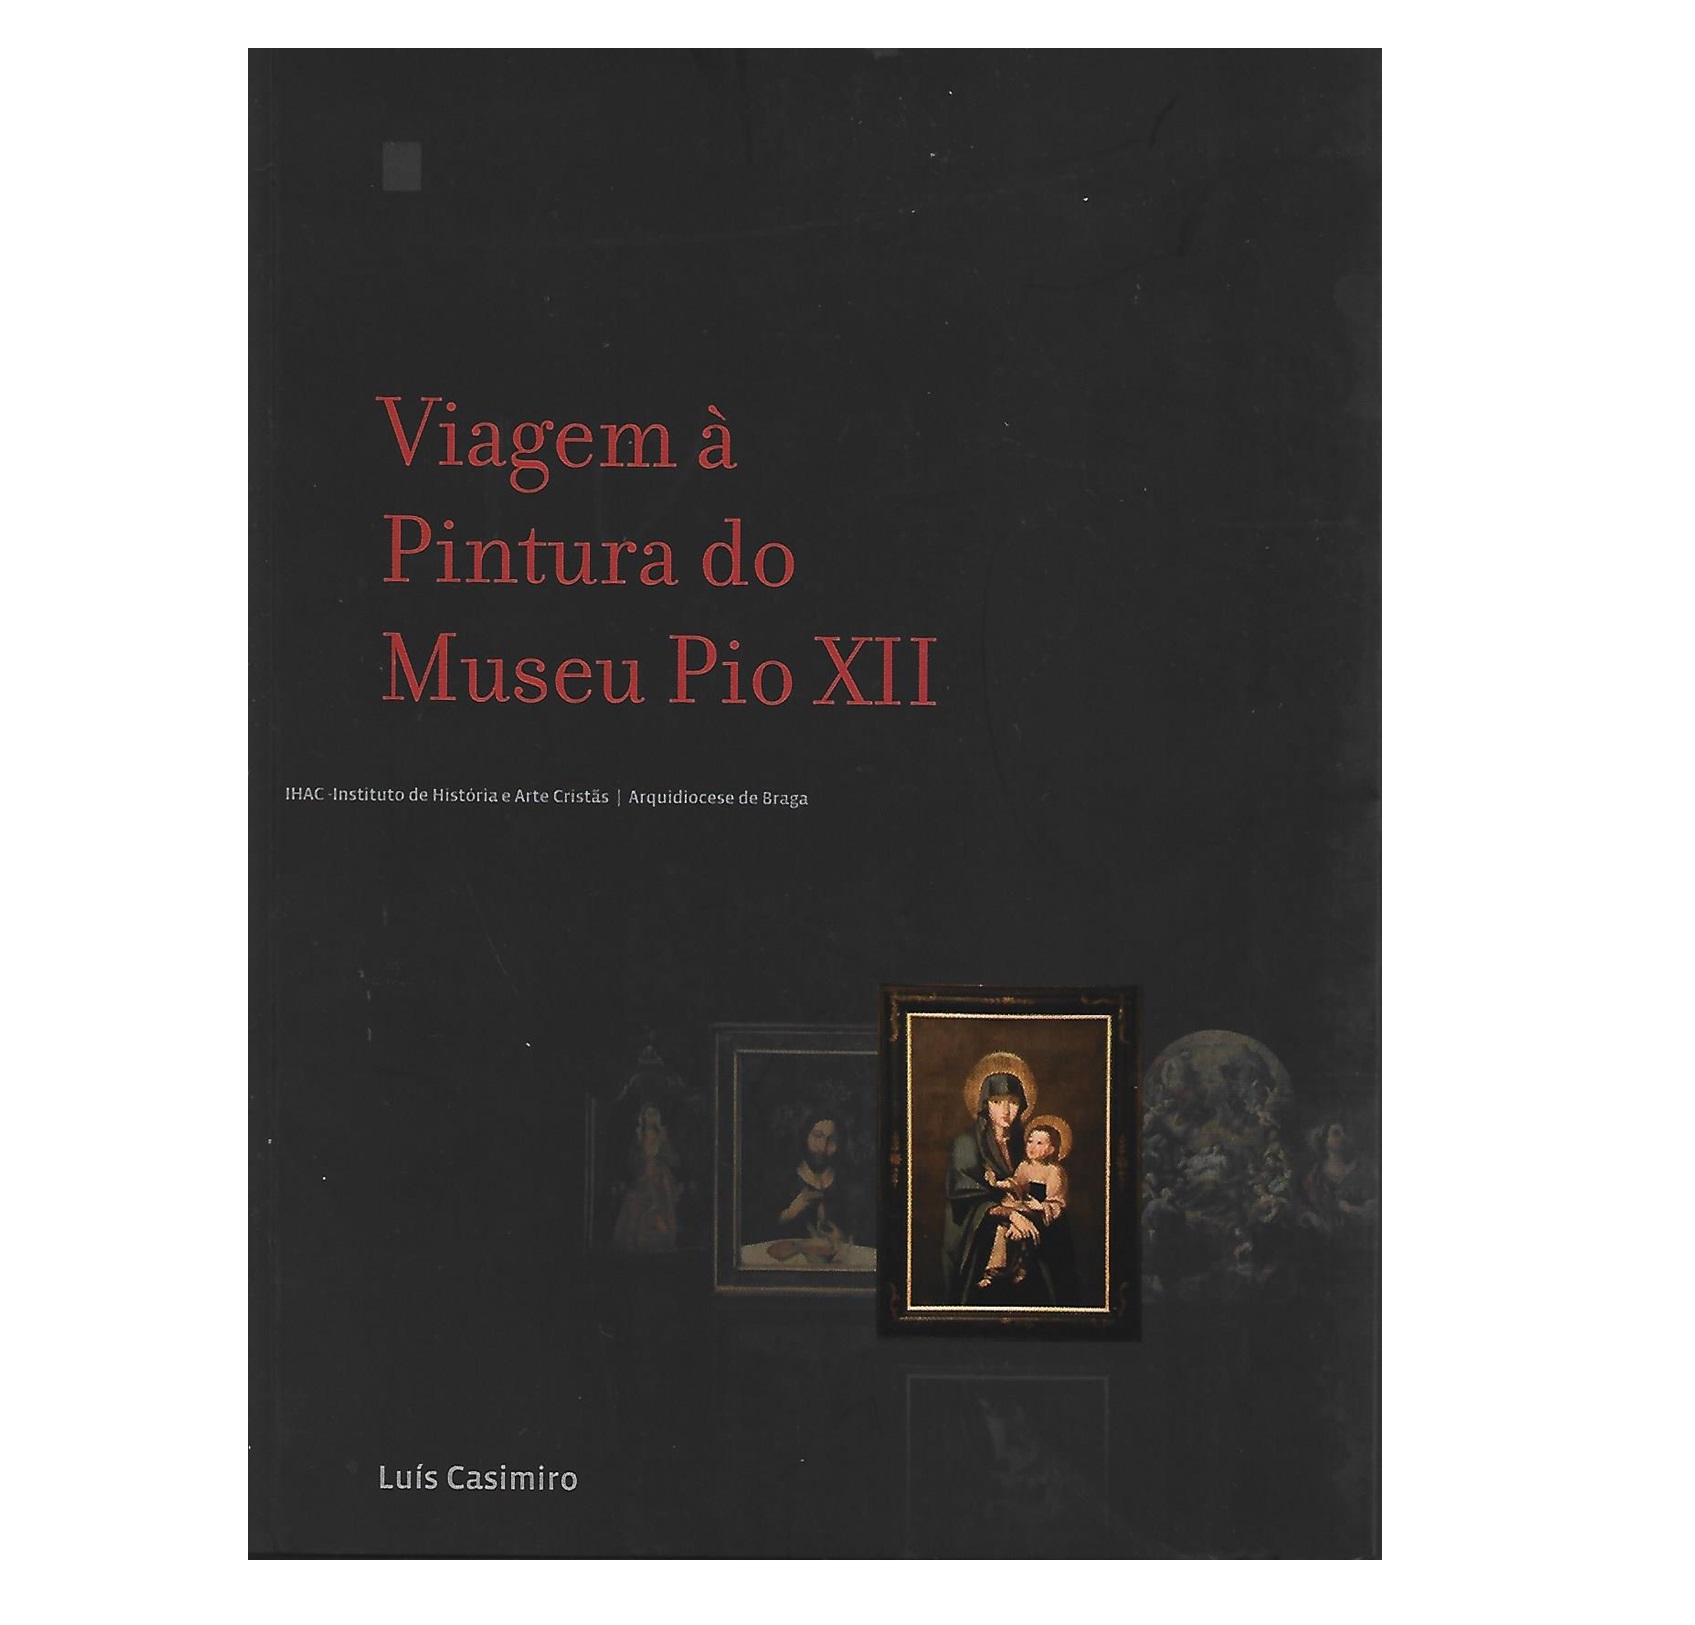 VIAGEM À PINTURA DO MUSEU PIO XII